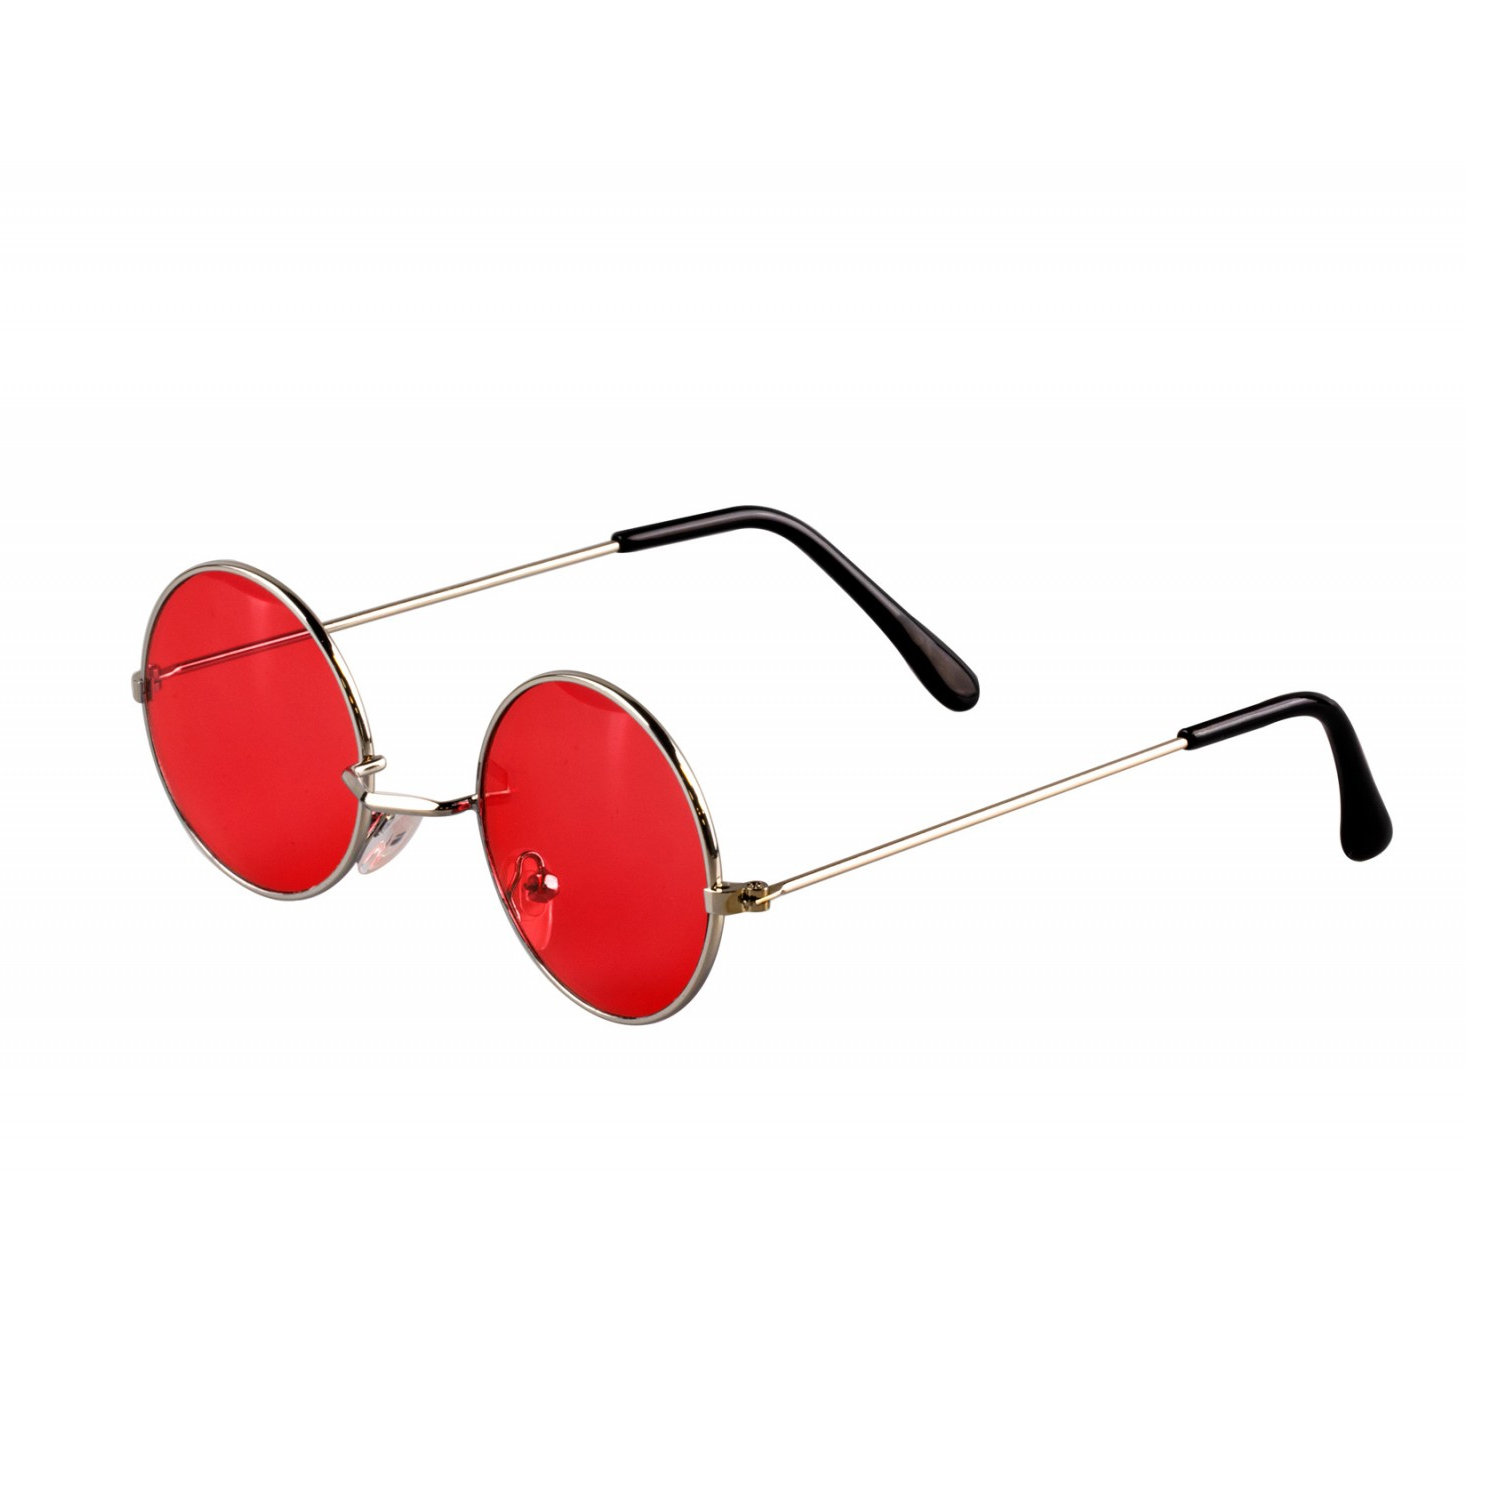 Brille Hippie, runde, rote Gläser aus Metall - Rot